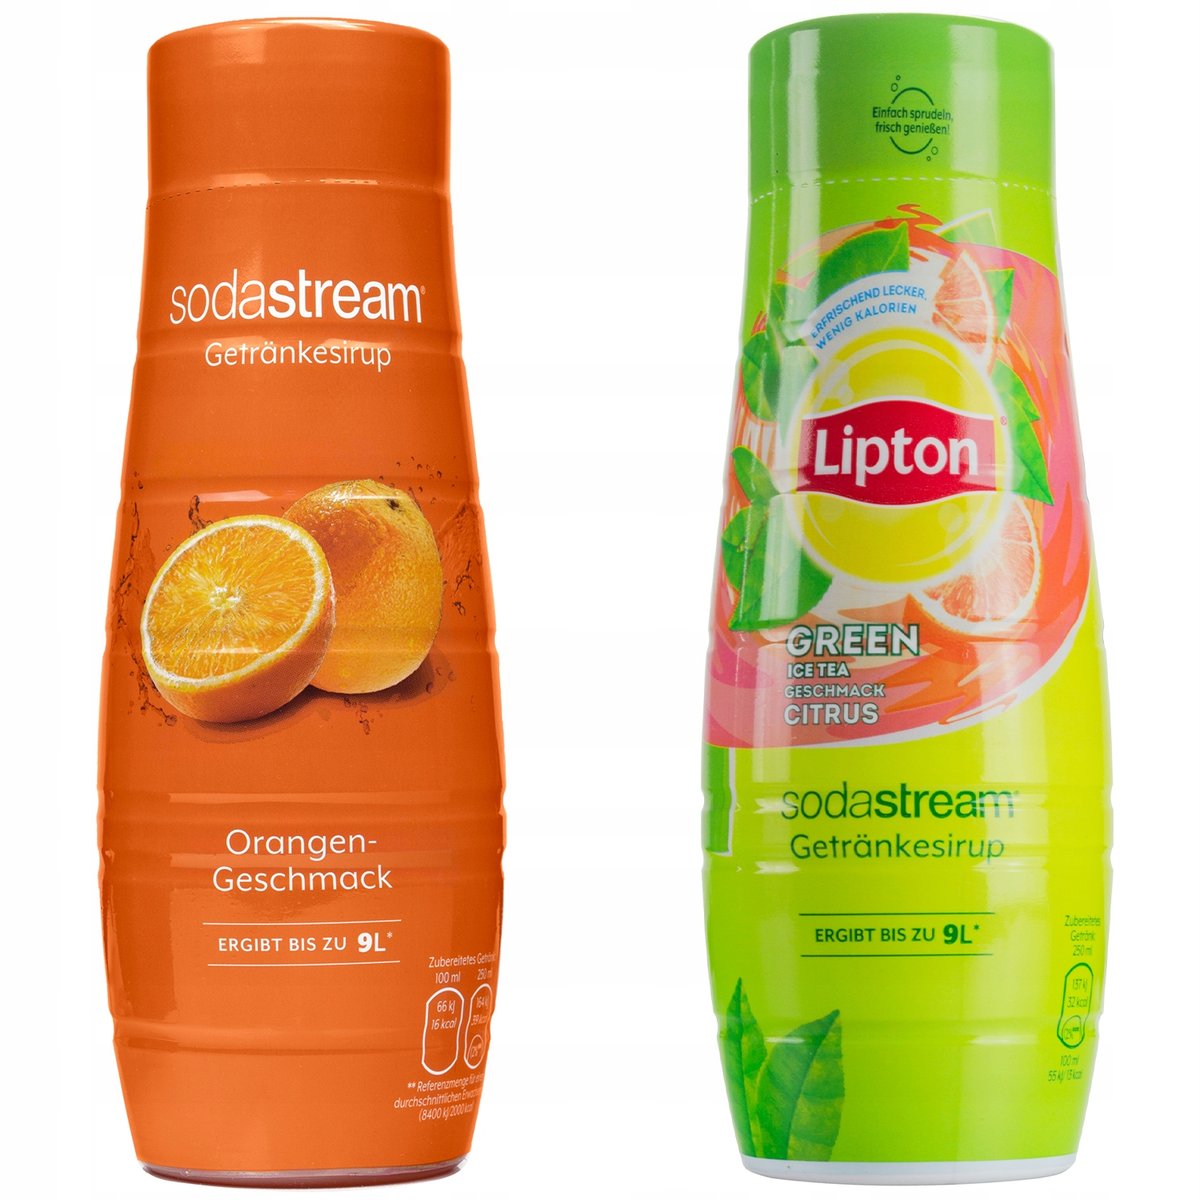 Syropy Sodastream Pomarańcza Lipton Green Cytrusy